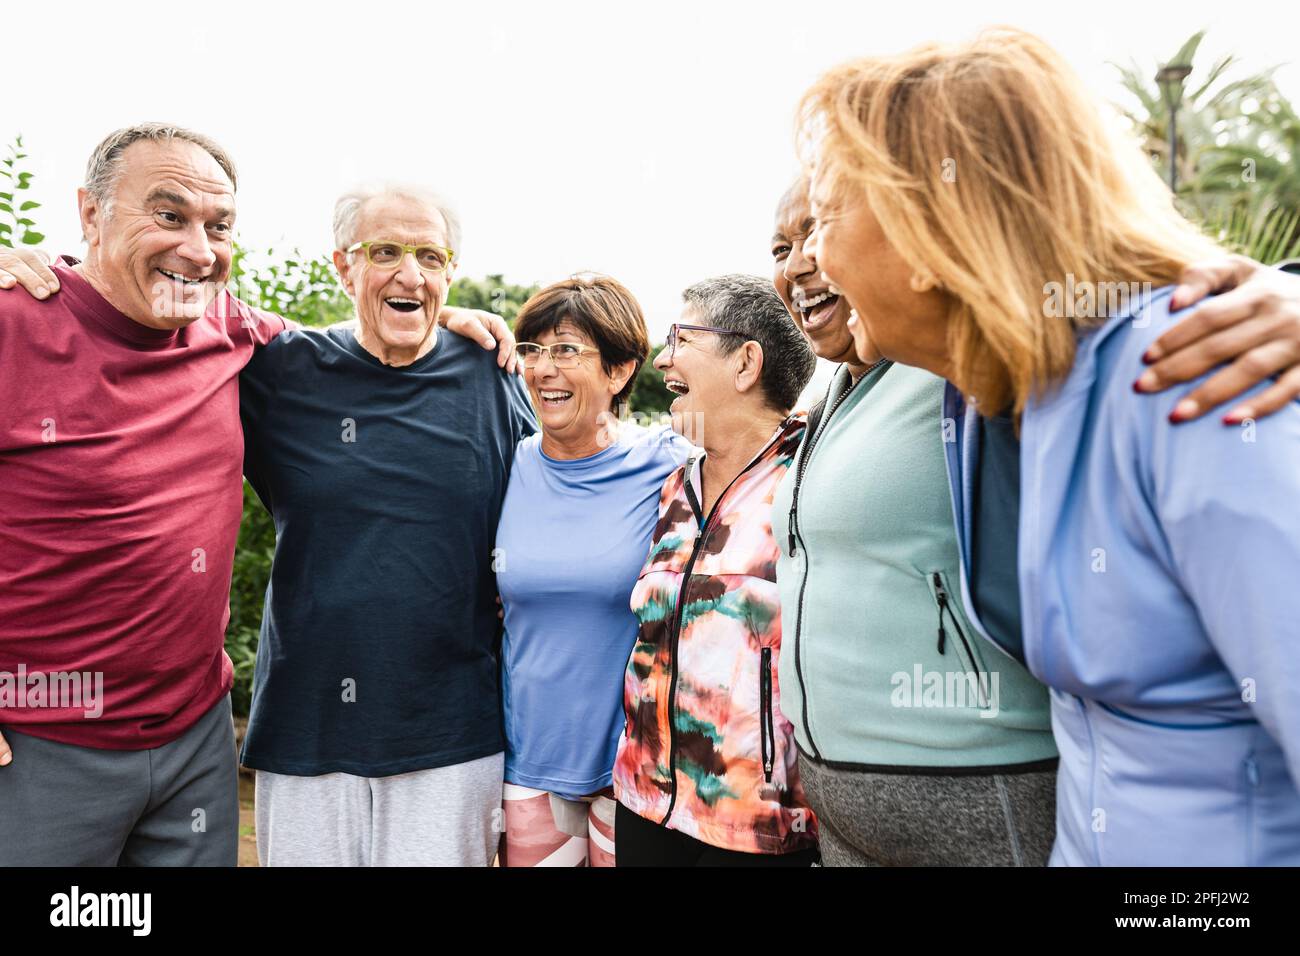 Eine Gruppe verschiedener Senior-Freunde, die nach dem Training im Park Spaß haben Stockfoto